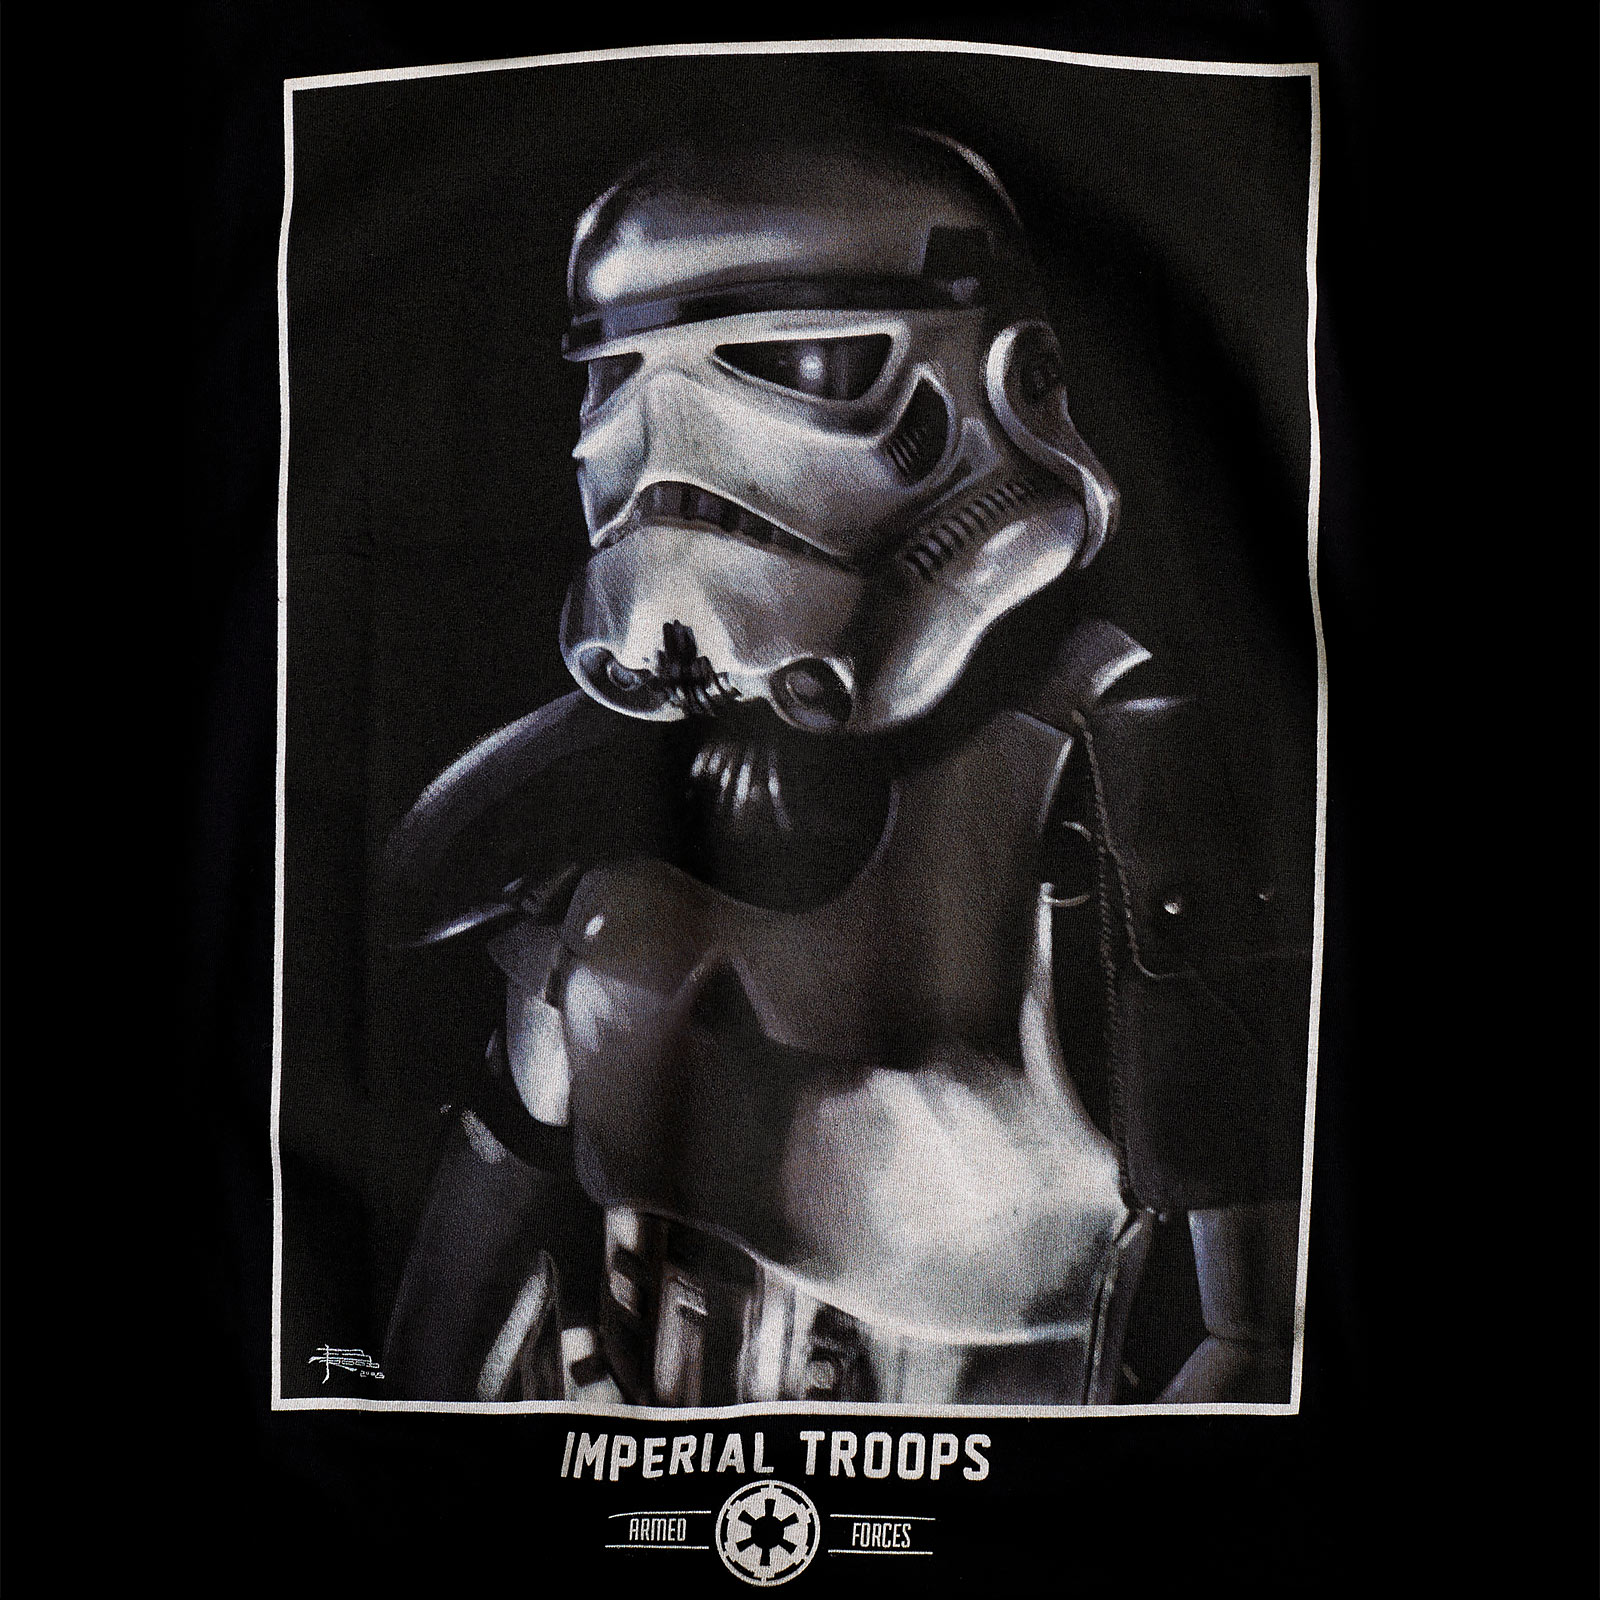 Star Wars - Imperial Trooper T-Shirt schwarz